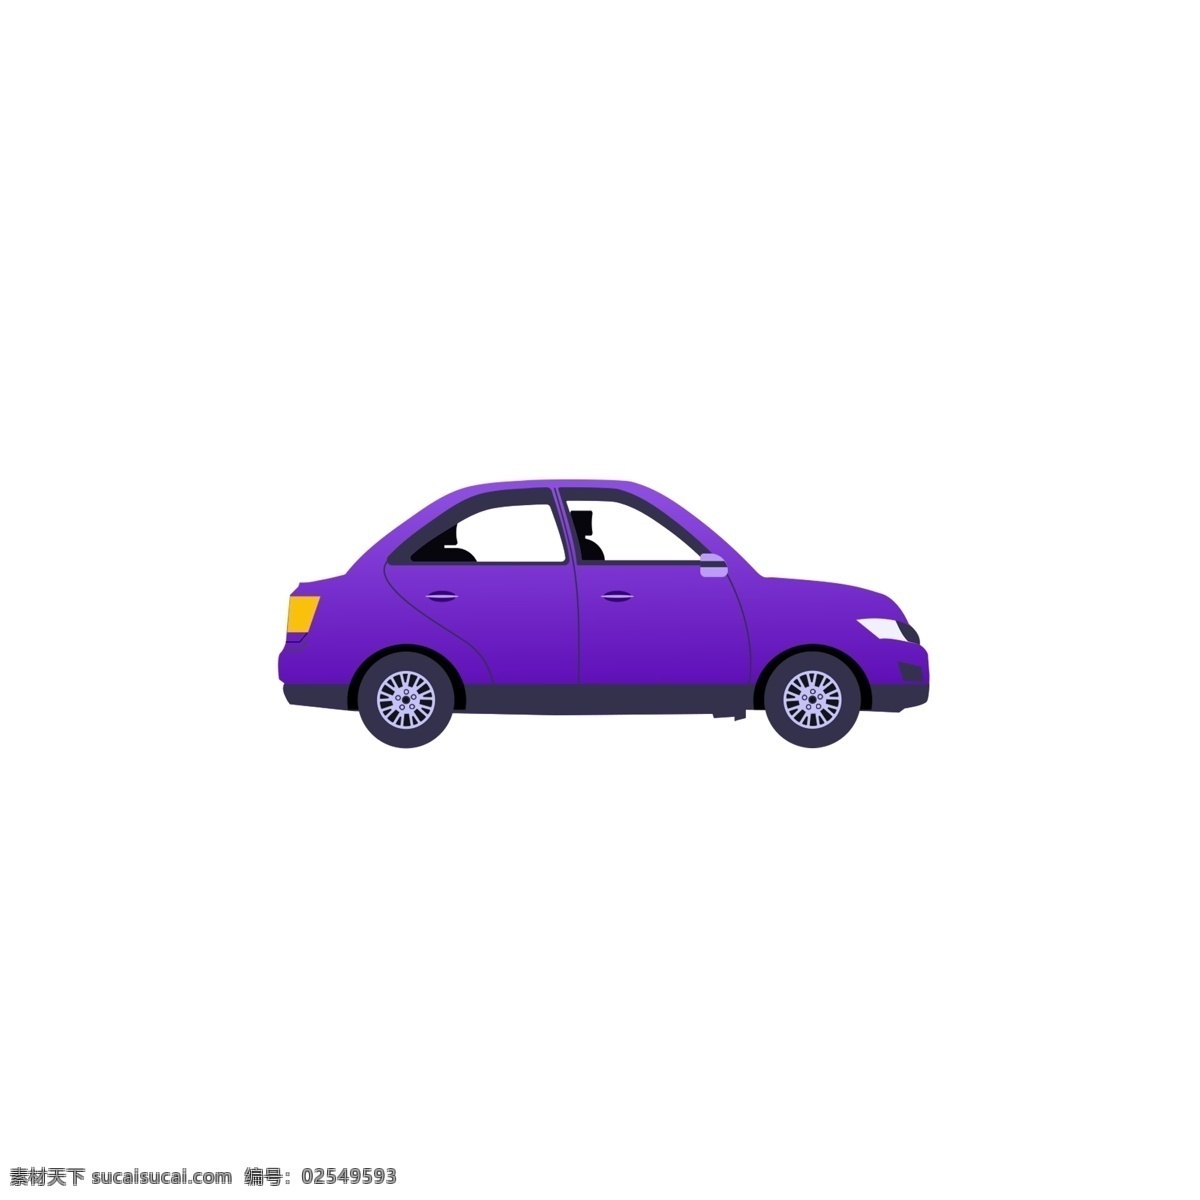 紫色 卡通 小汽车 发动 gif 动图 动态 汽车 交通工具 开车 机动车 效果元素